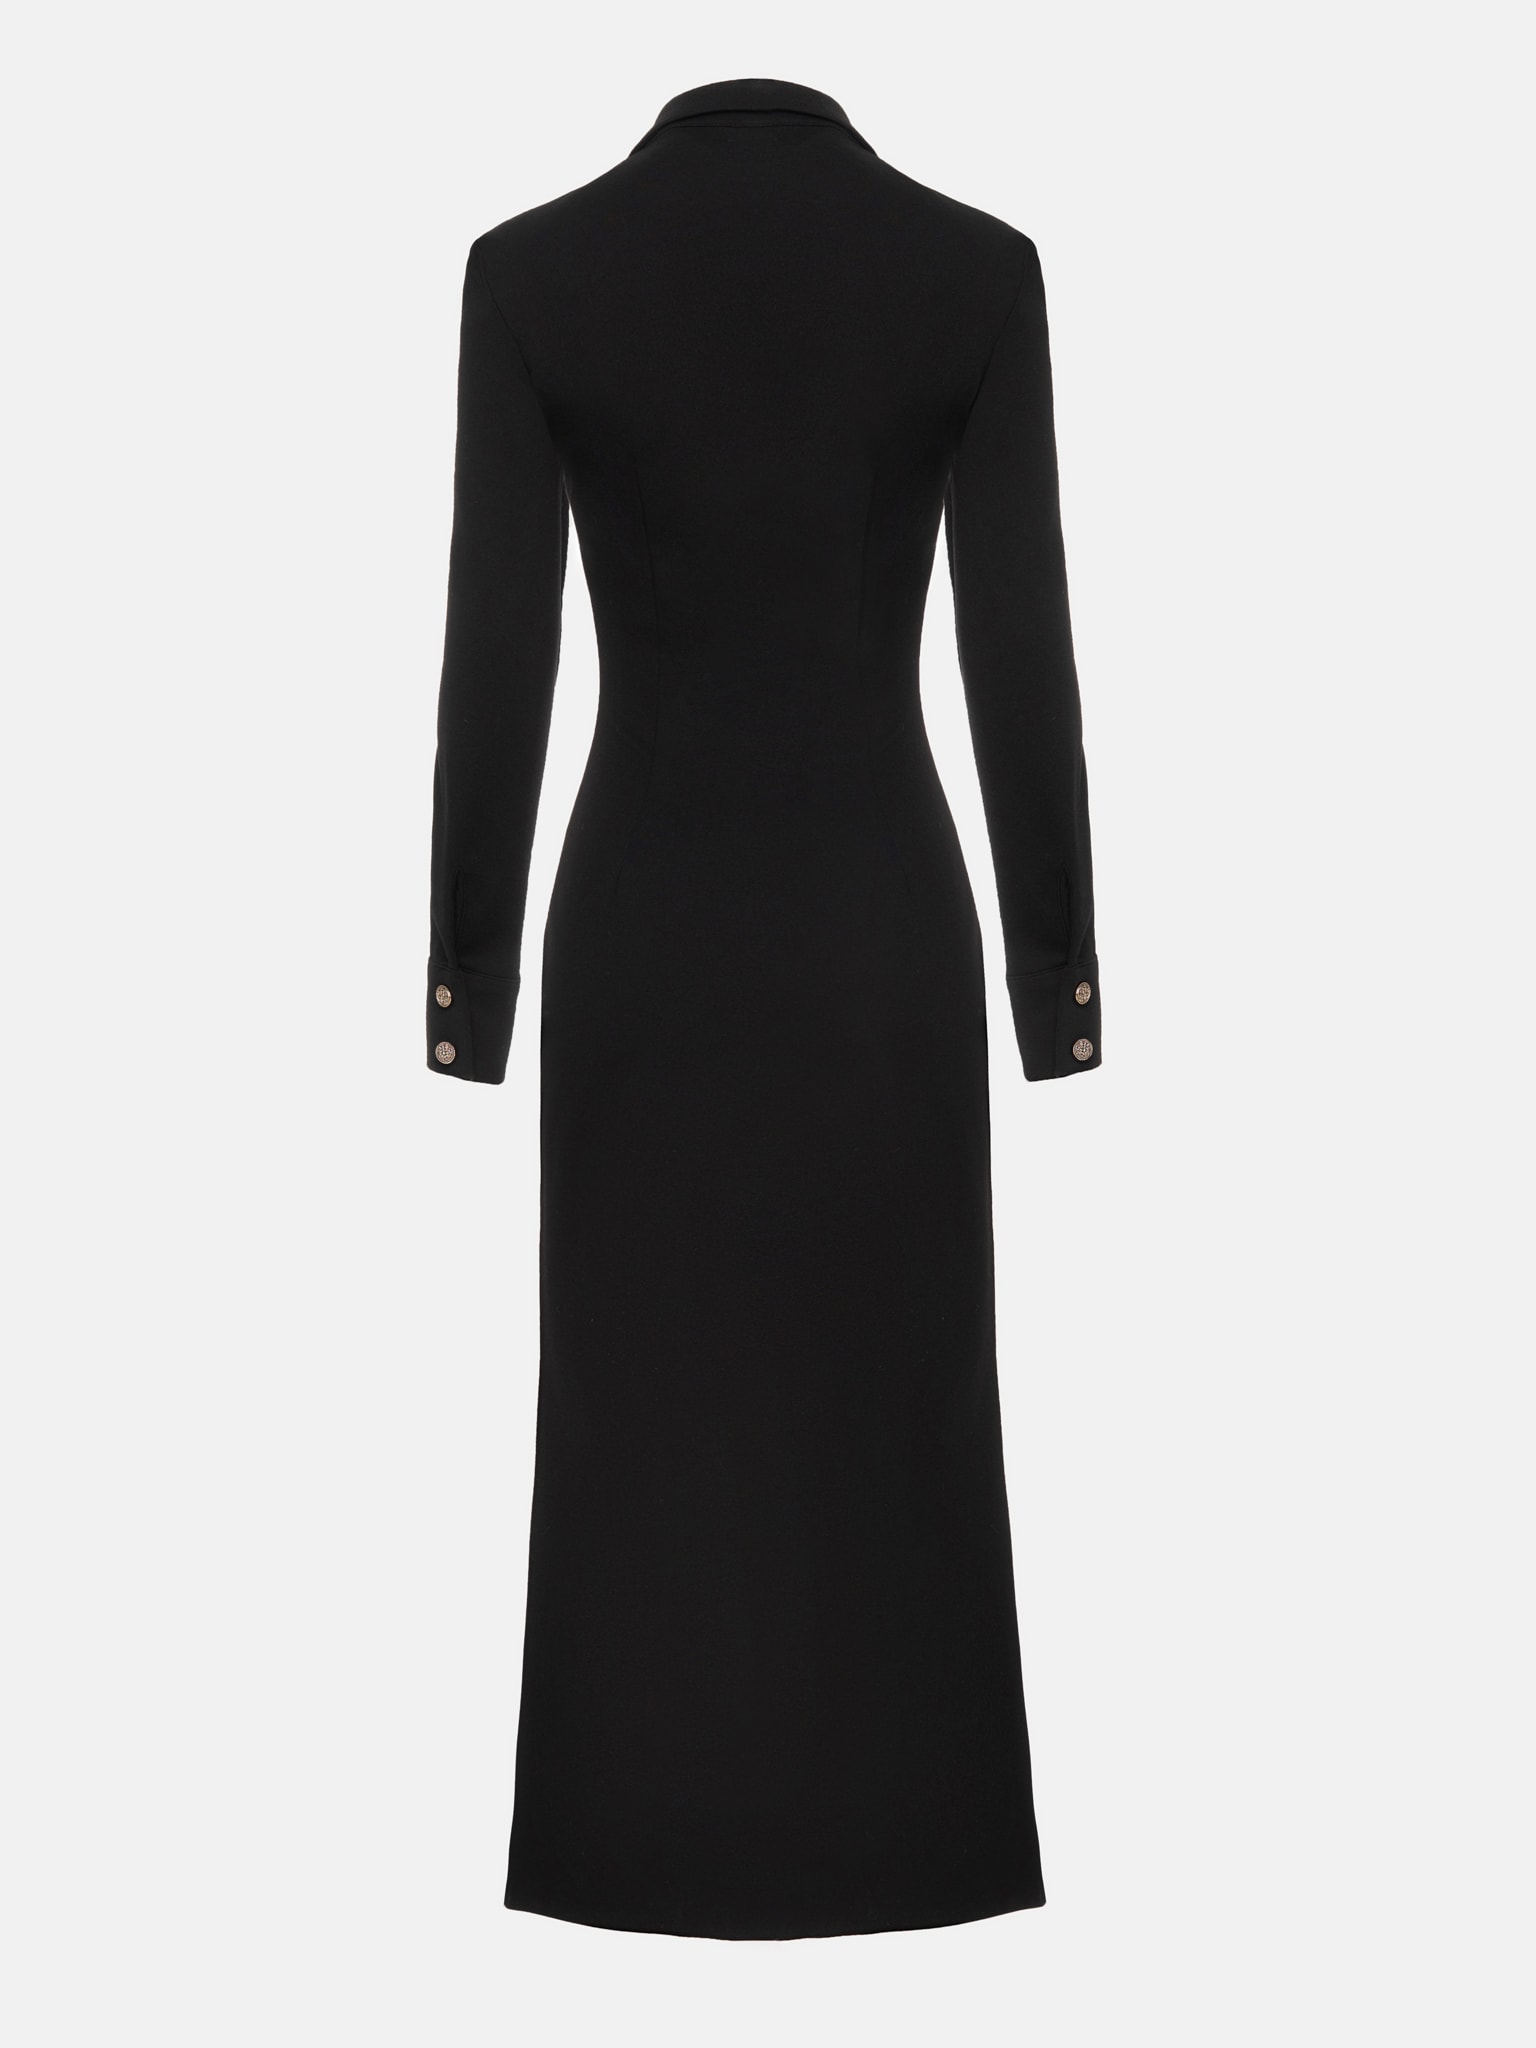 Collared buttoned midi dress :: LICHI - Online fashion store